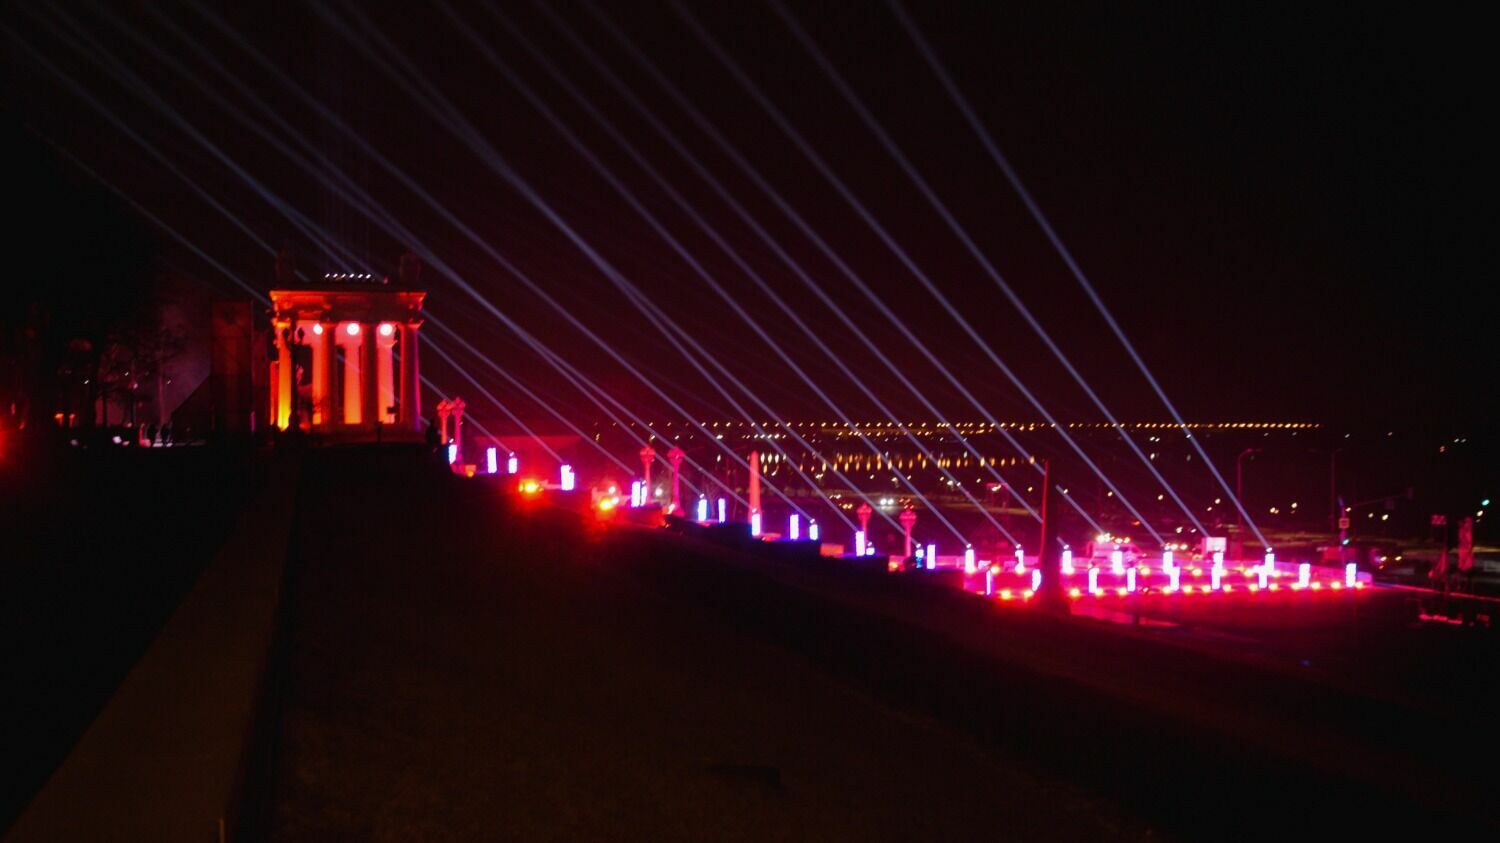 2 февраля в 20:45 в Волгограде объявят минуту молчания, а все точки «Моста памяти» соединят световыми лучами